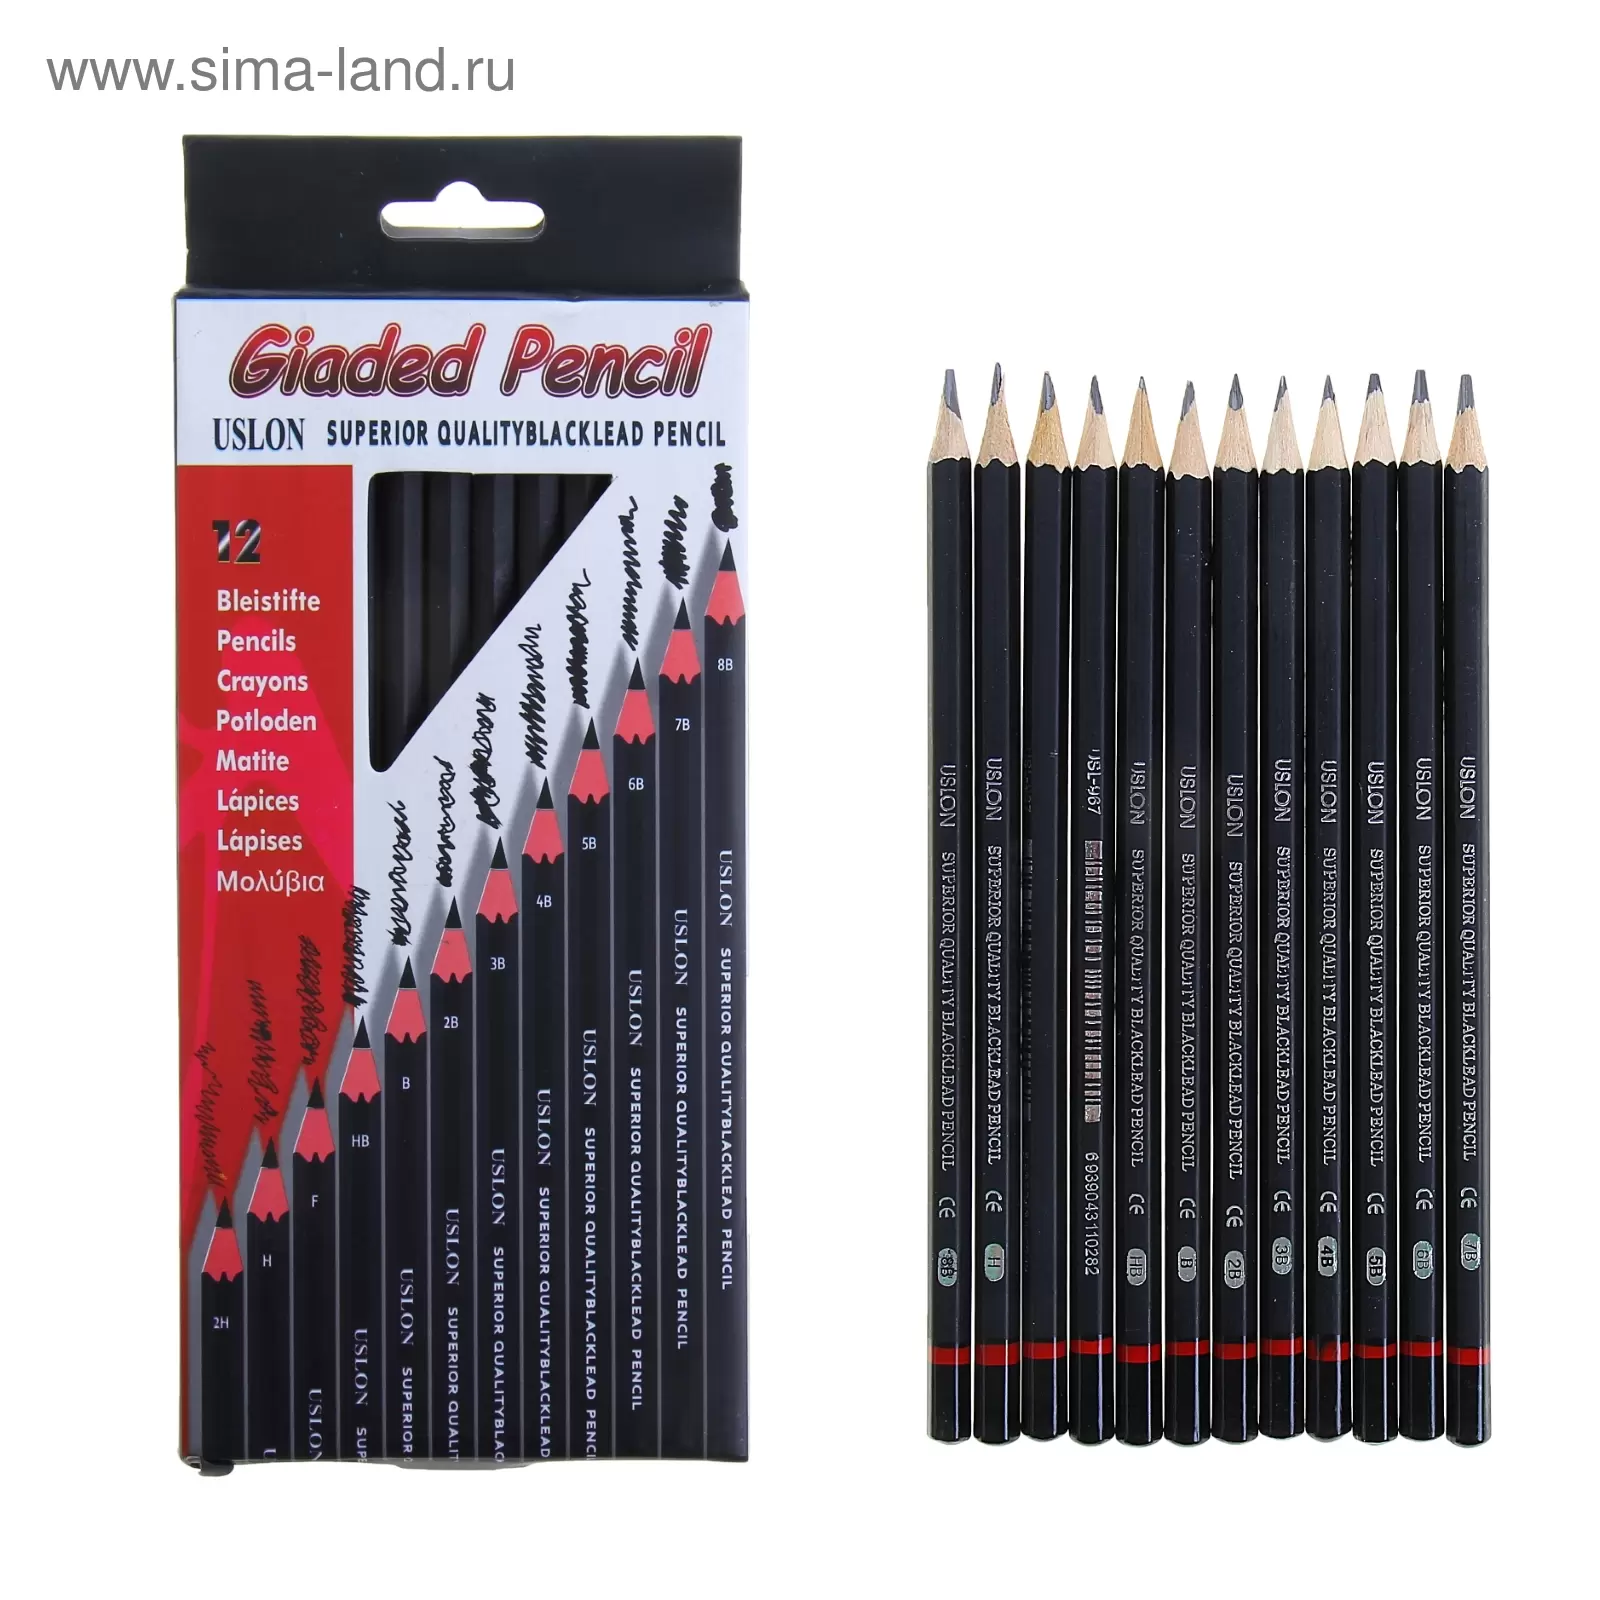 Набор чернографитных карандашей  12шт(8В+7В+6В+5В+4В+3В+2В+В+НВ+Н+2Н+F)Uslon